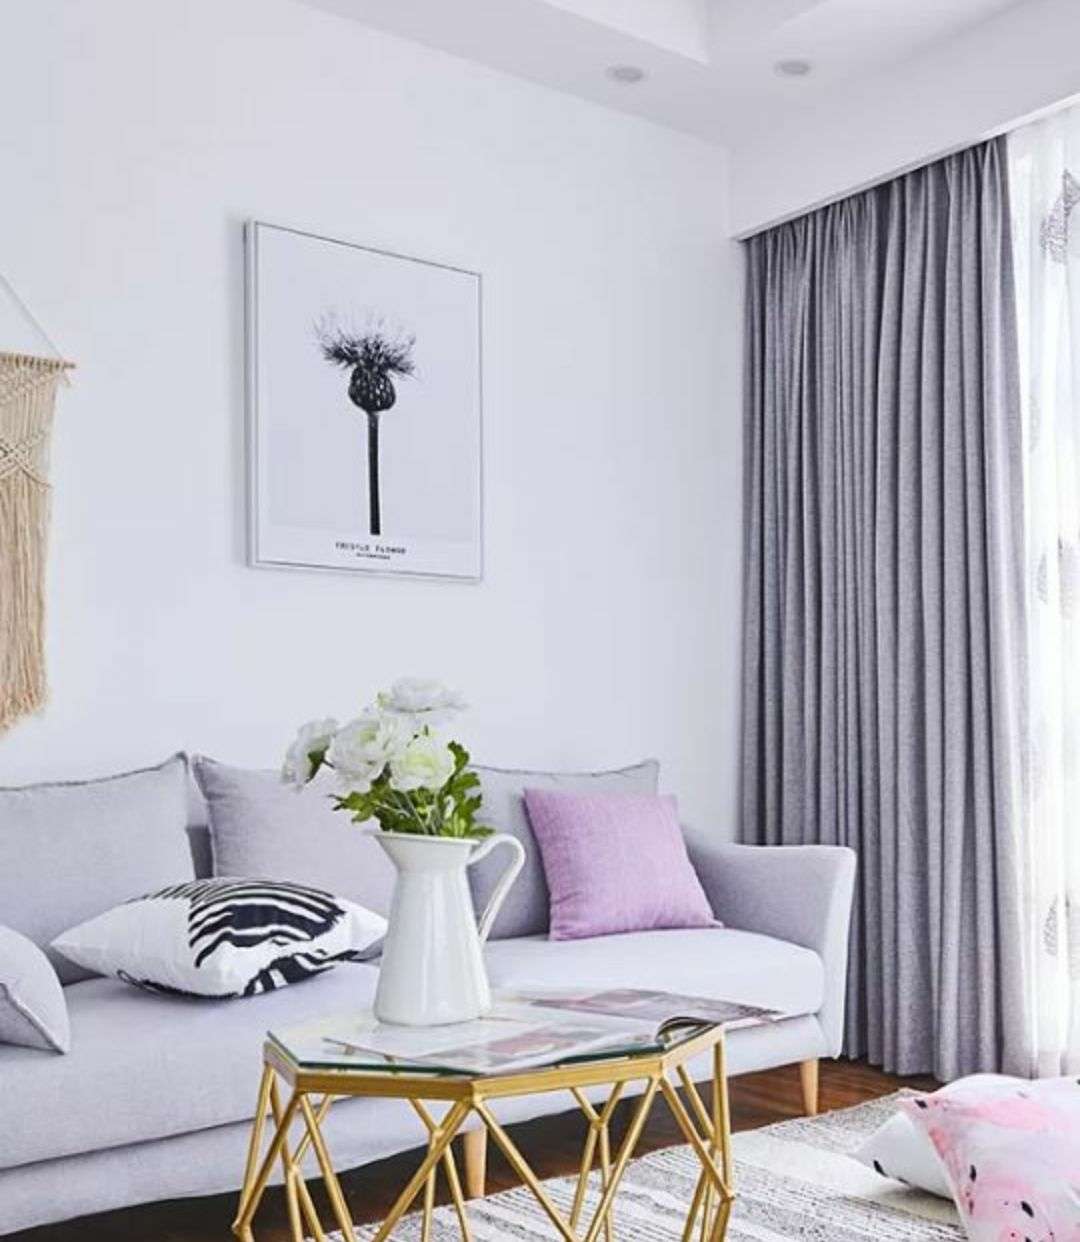 亚麻布窗帘加白色纱帘灰色布艺沙发配着紫色黑白色的抱枕一张